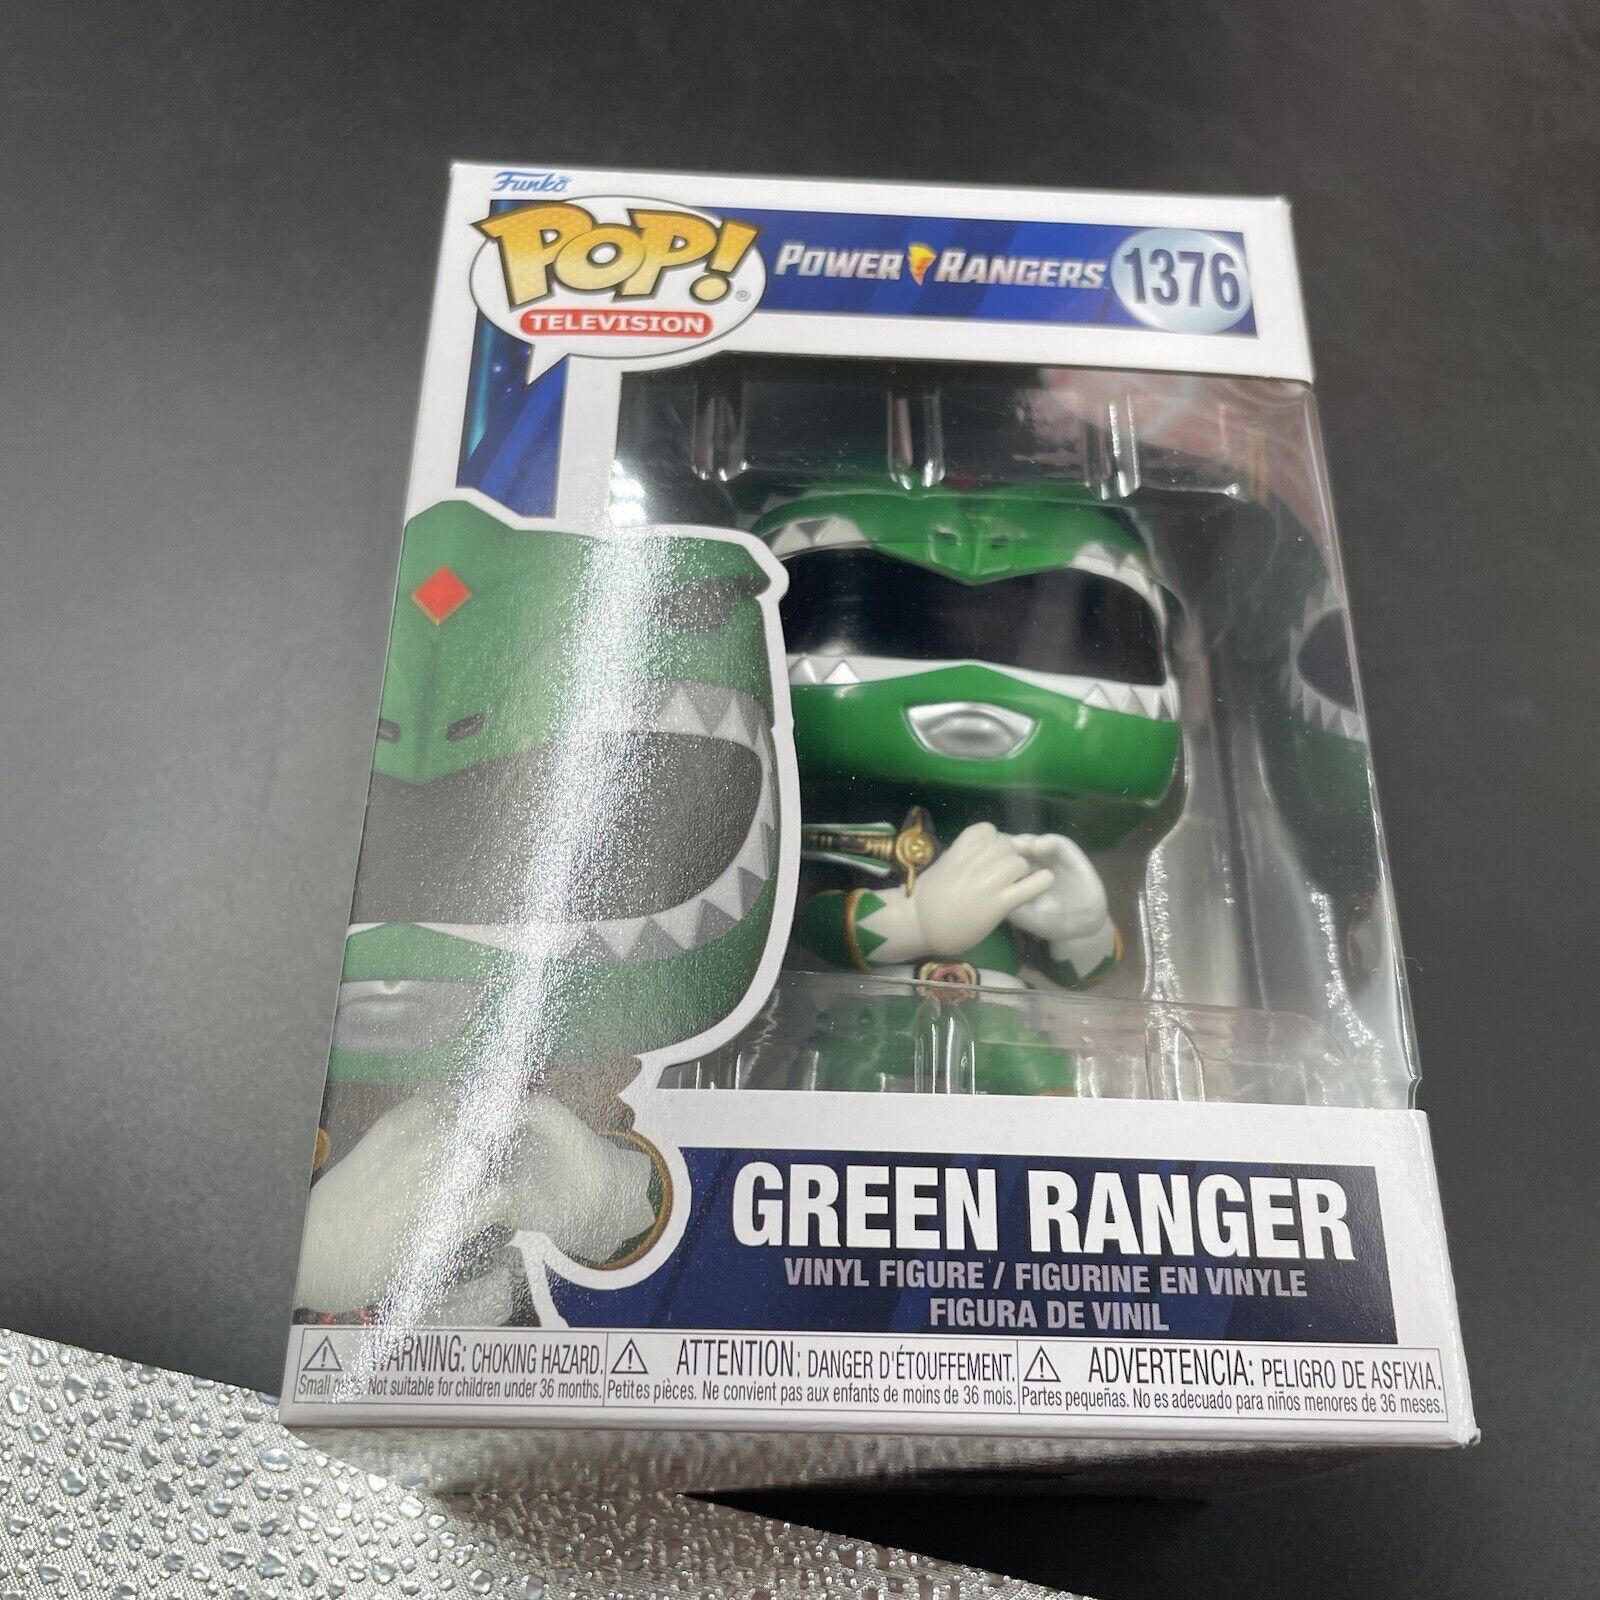 Funko Pop Vinyl: Power Rangers - Green Ranger #1376 BRAND NEW FROM CASE PACK